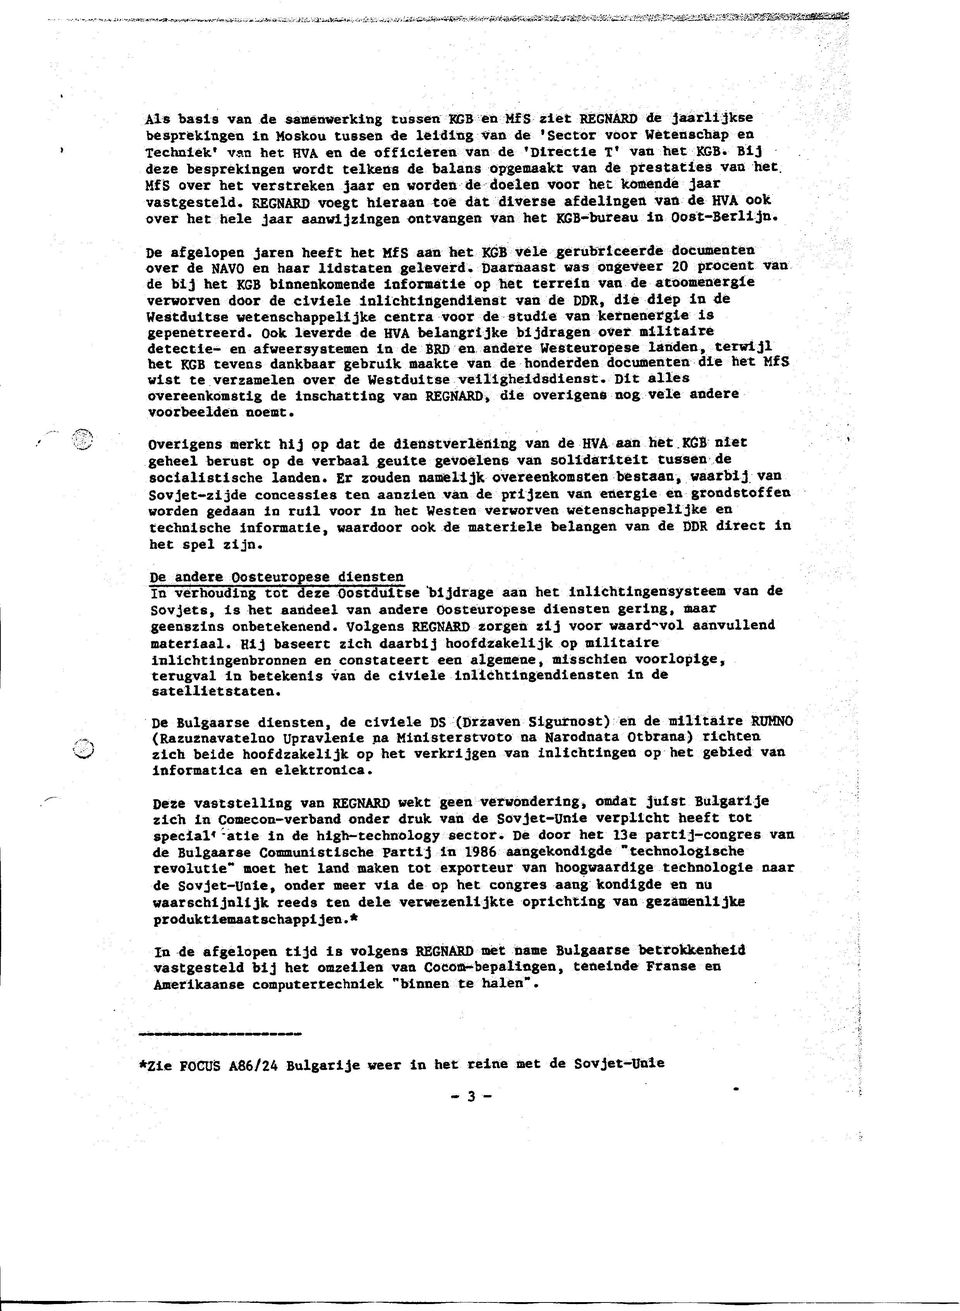 REGNARD voegt hieraan toe dat diverse afdelingen van de HVA ook over het hele Jaar aanwijzingen ontvangen van het KGB-bureau in Oost-Berlijn.